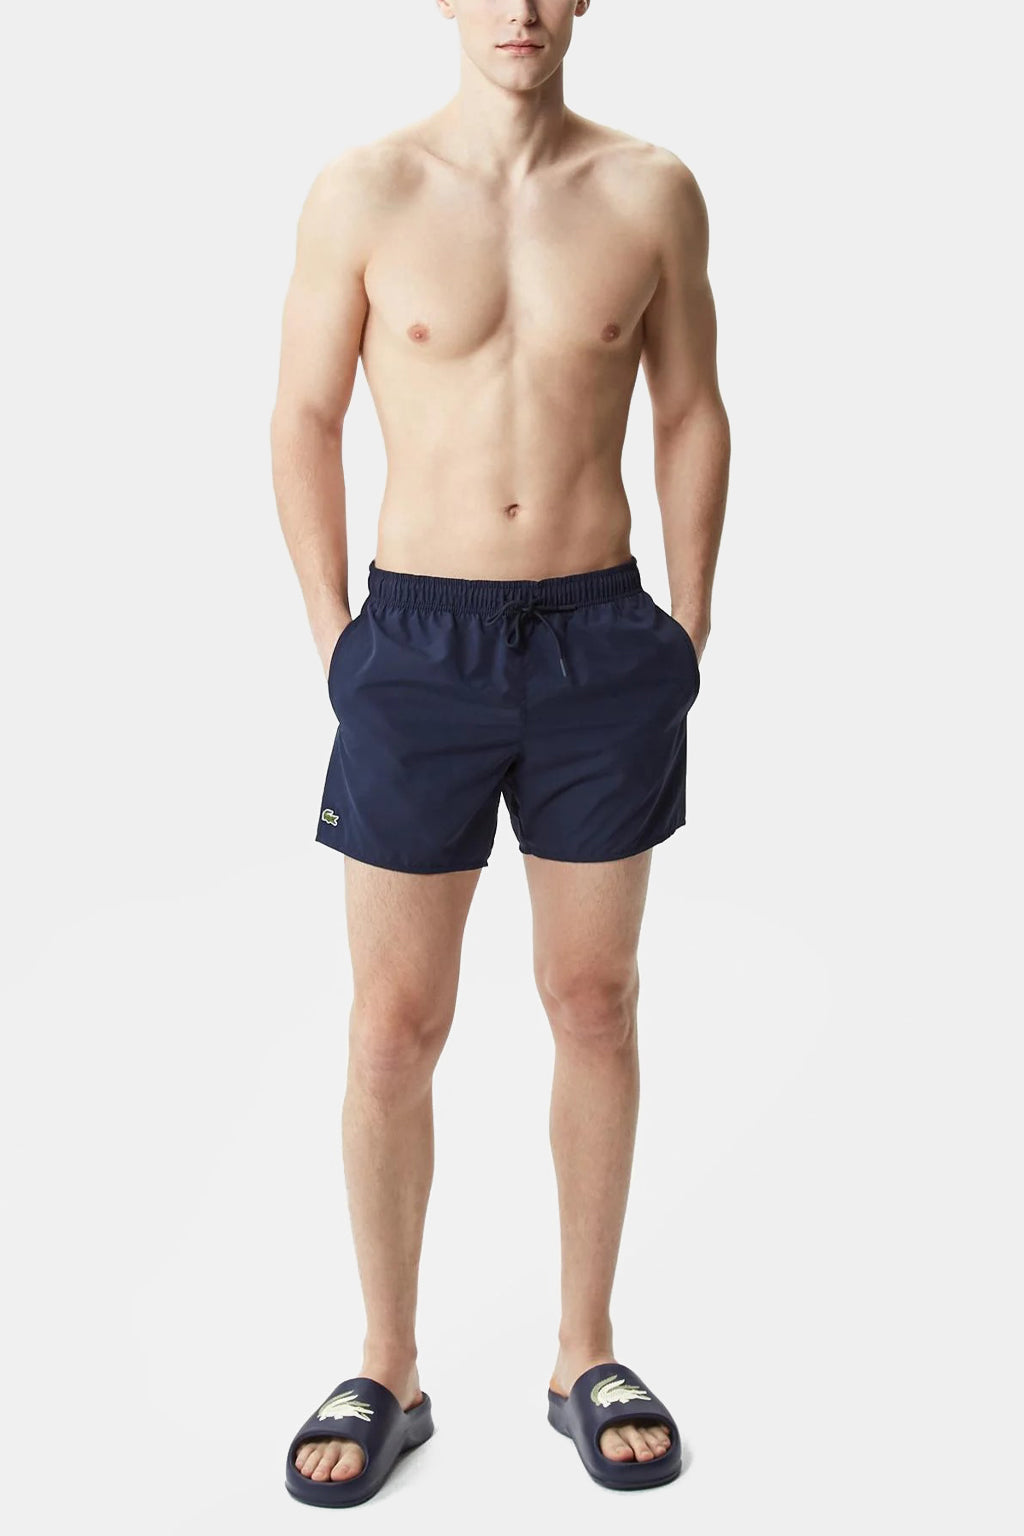 Lacoste - Lacoste Men's Light Quick-Dry Swim Shorts